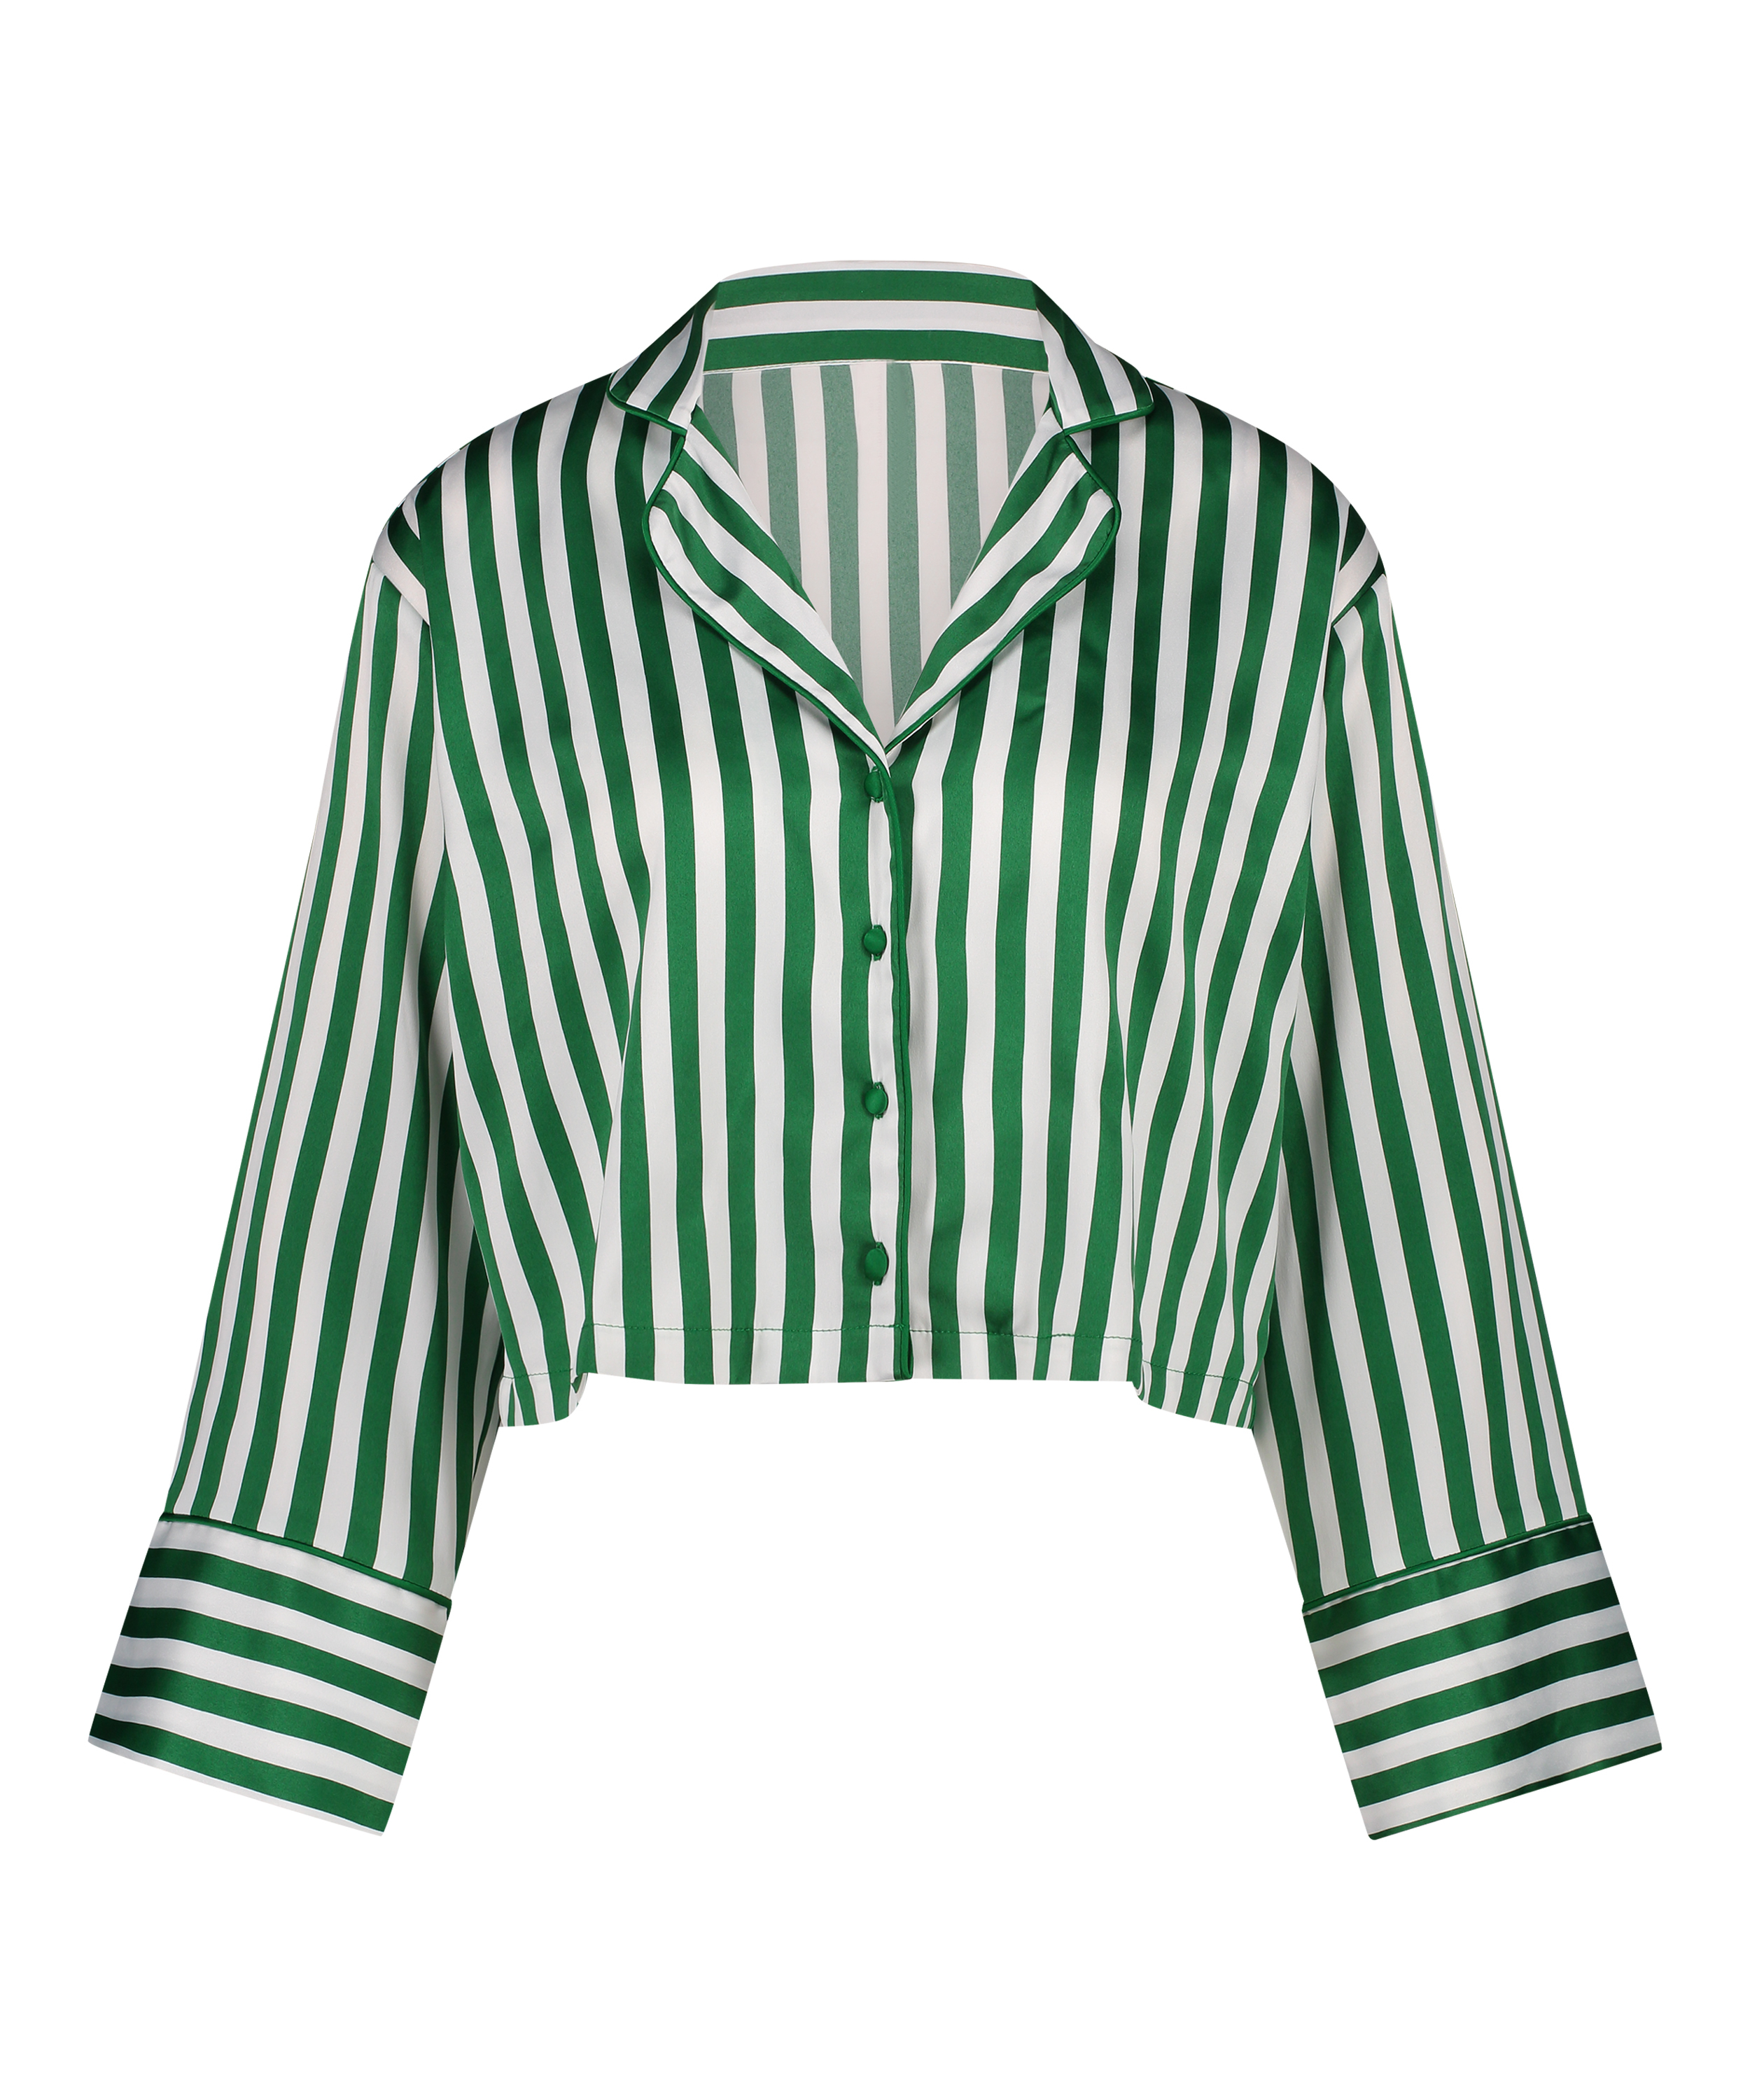 Satin Long-Sleeved Jacket, Green, main